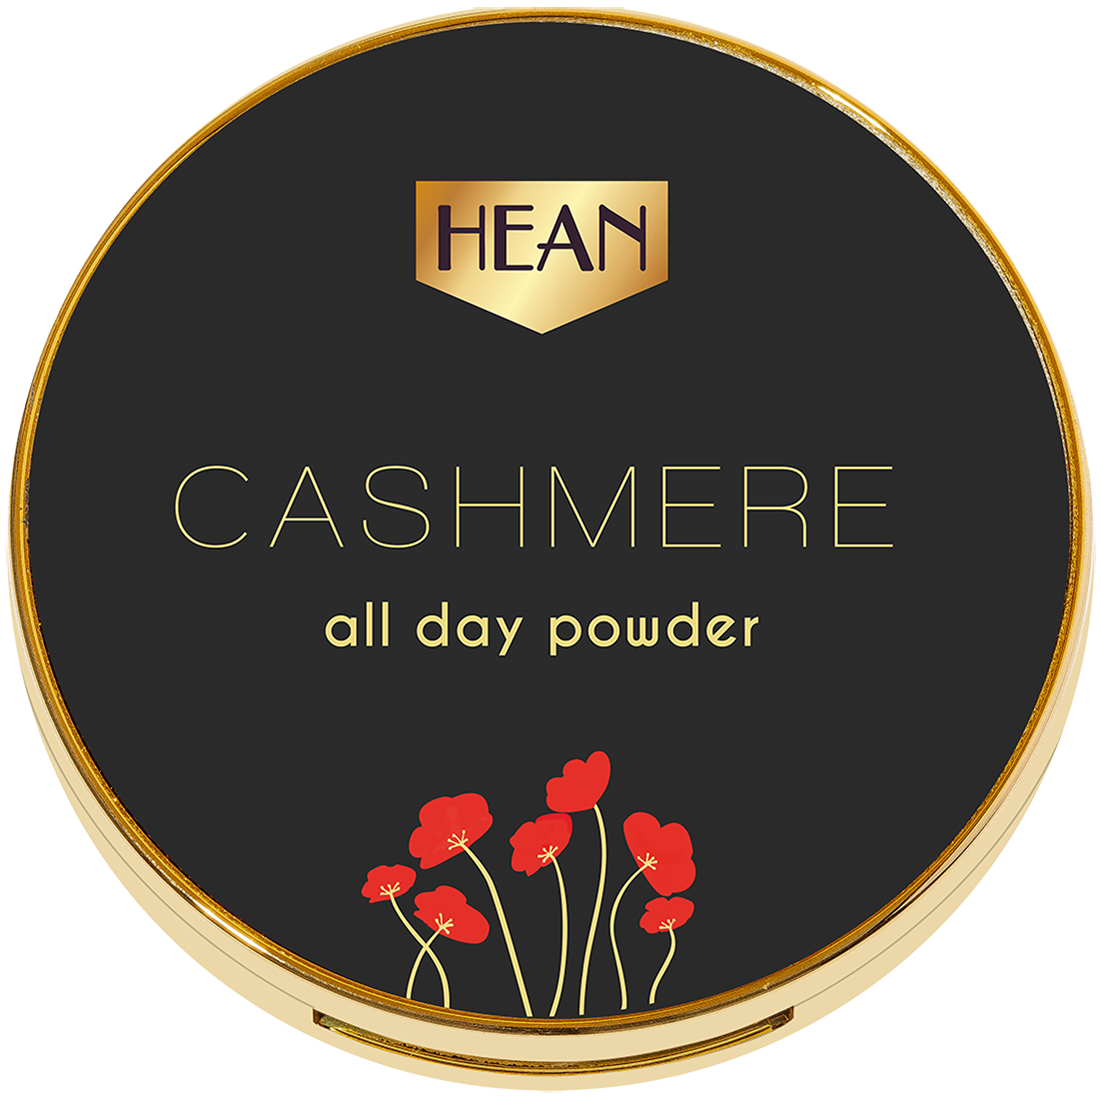 Hean Cashmere